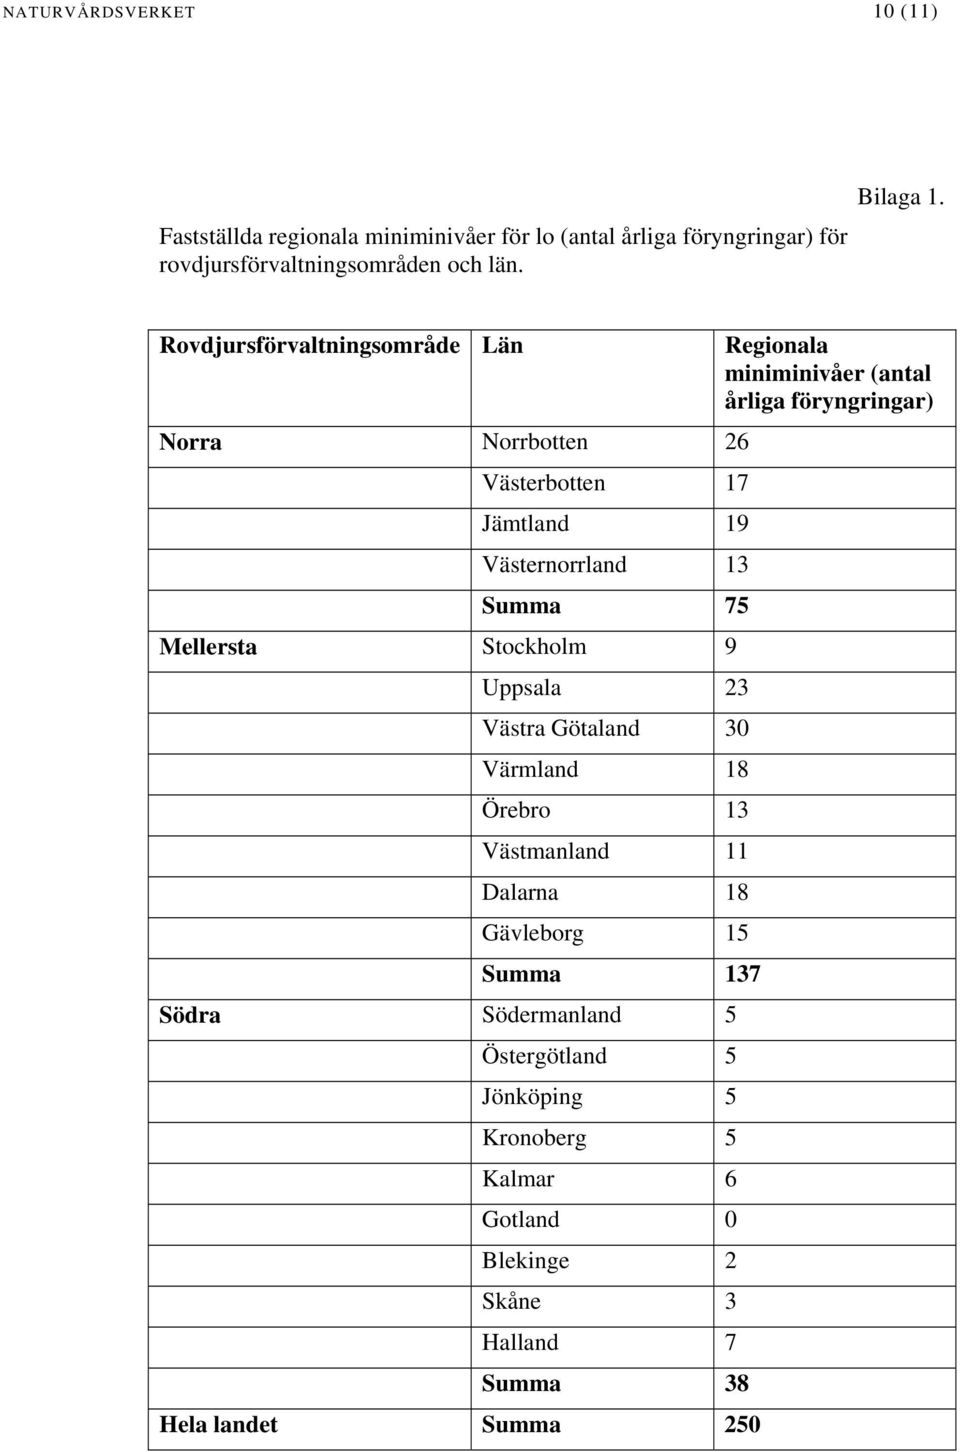 Rovdjursförvaltningsområde Län Regionala miniminivåer (antal årliga föryngringar) Norra Norrbotten 26 Västerbotten 17 Jämtland 19